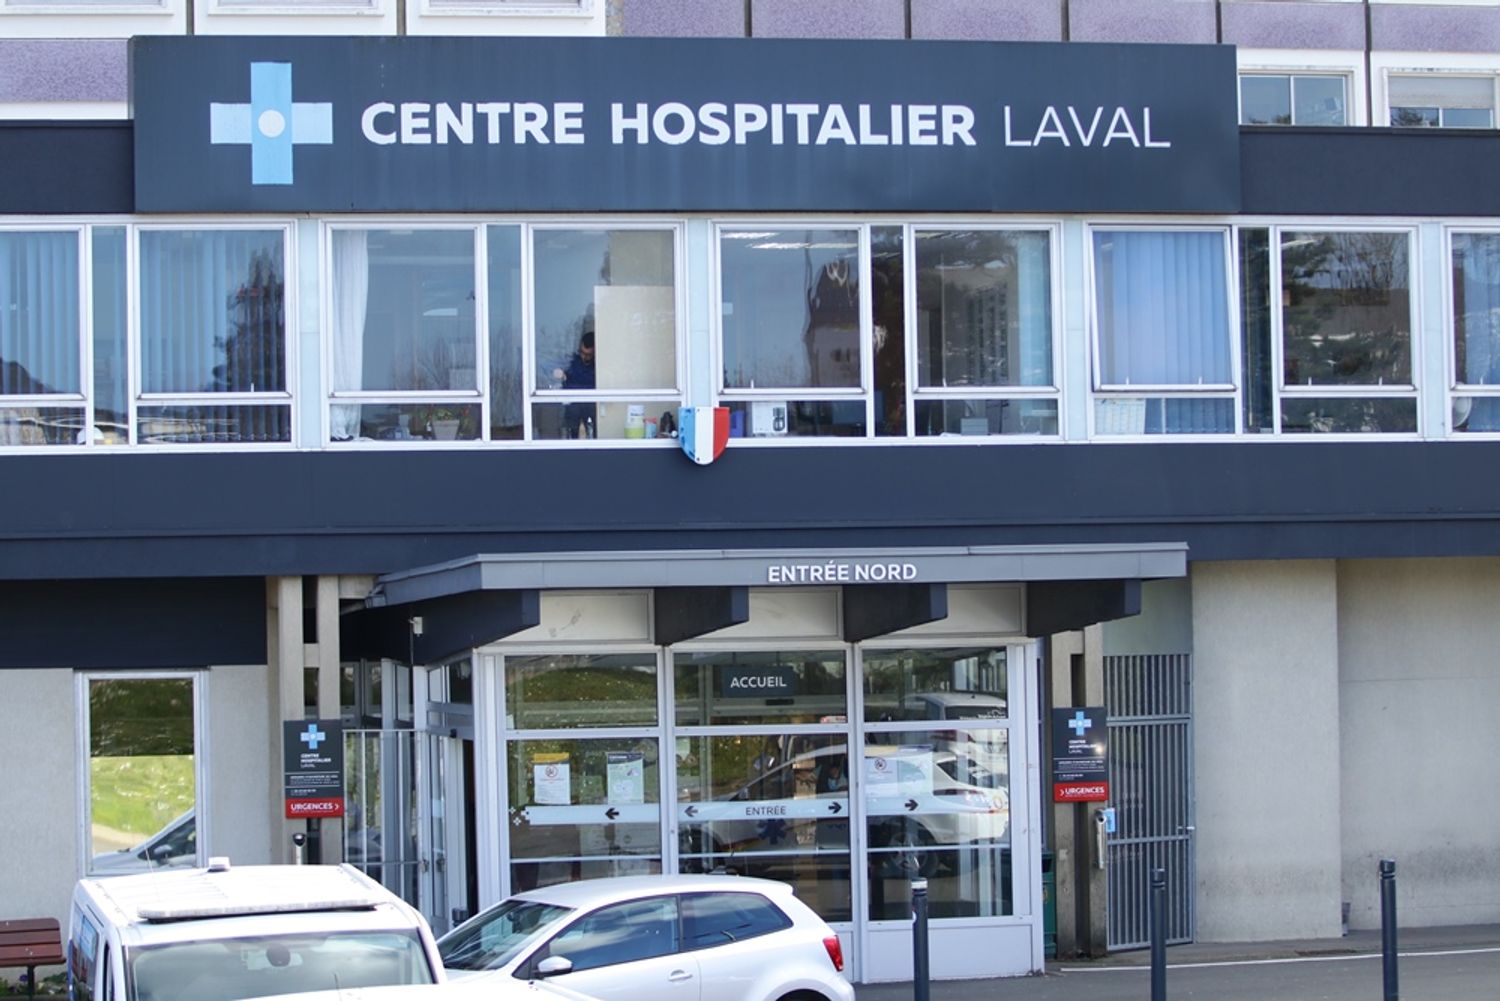 Hopital CH Laval urgences entrée nord_25 02 22_Cyprien Legeay